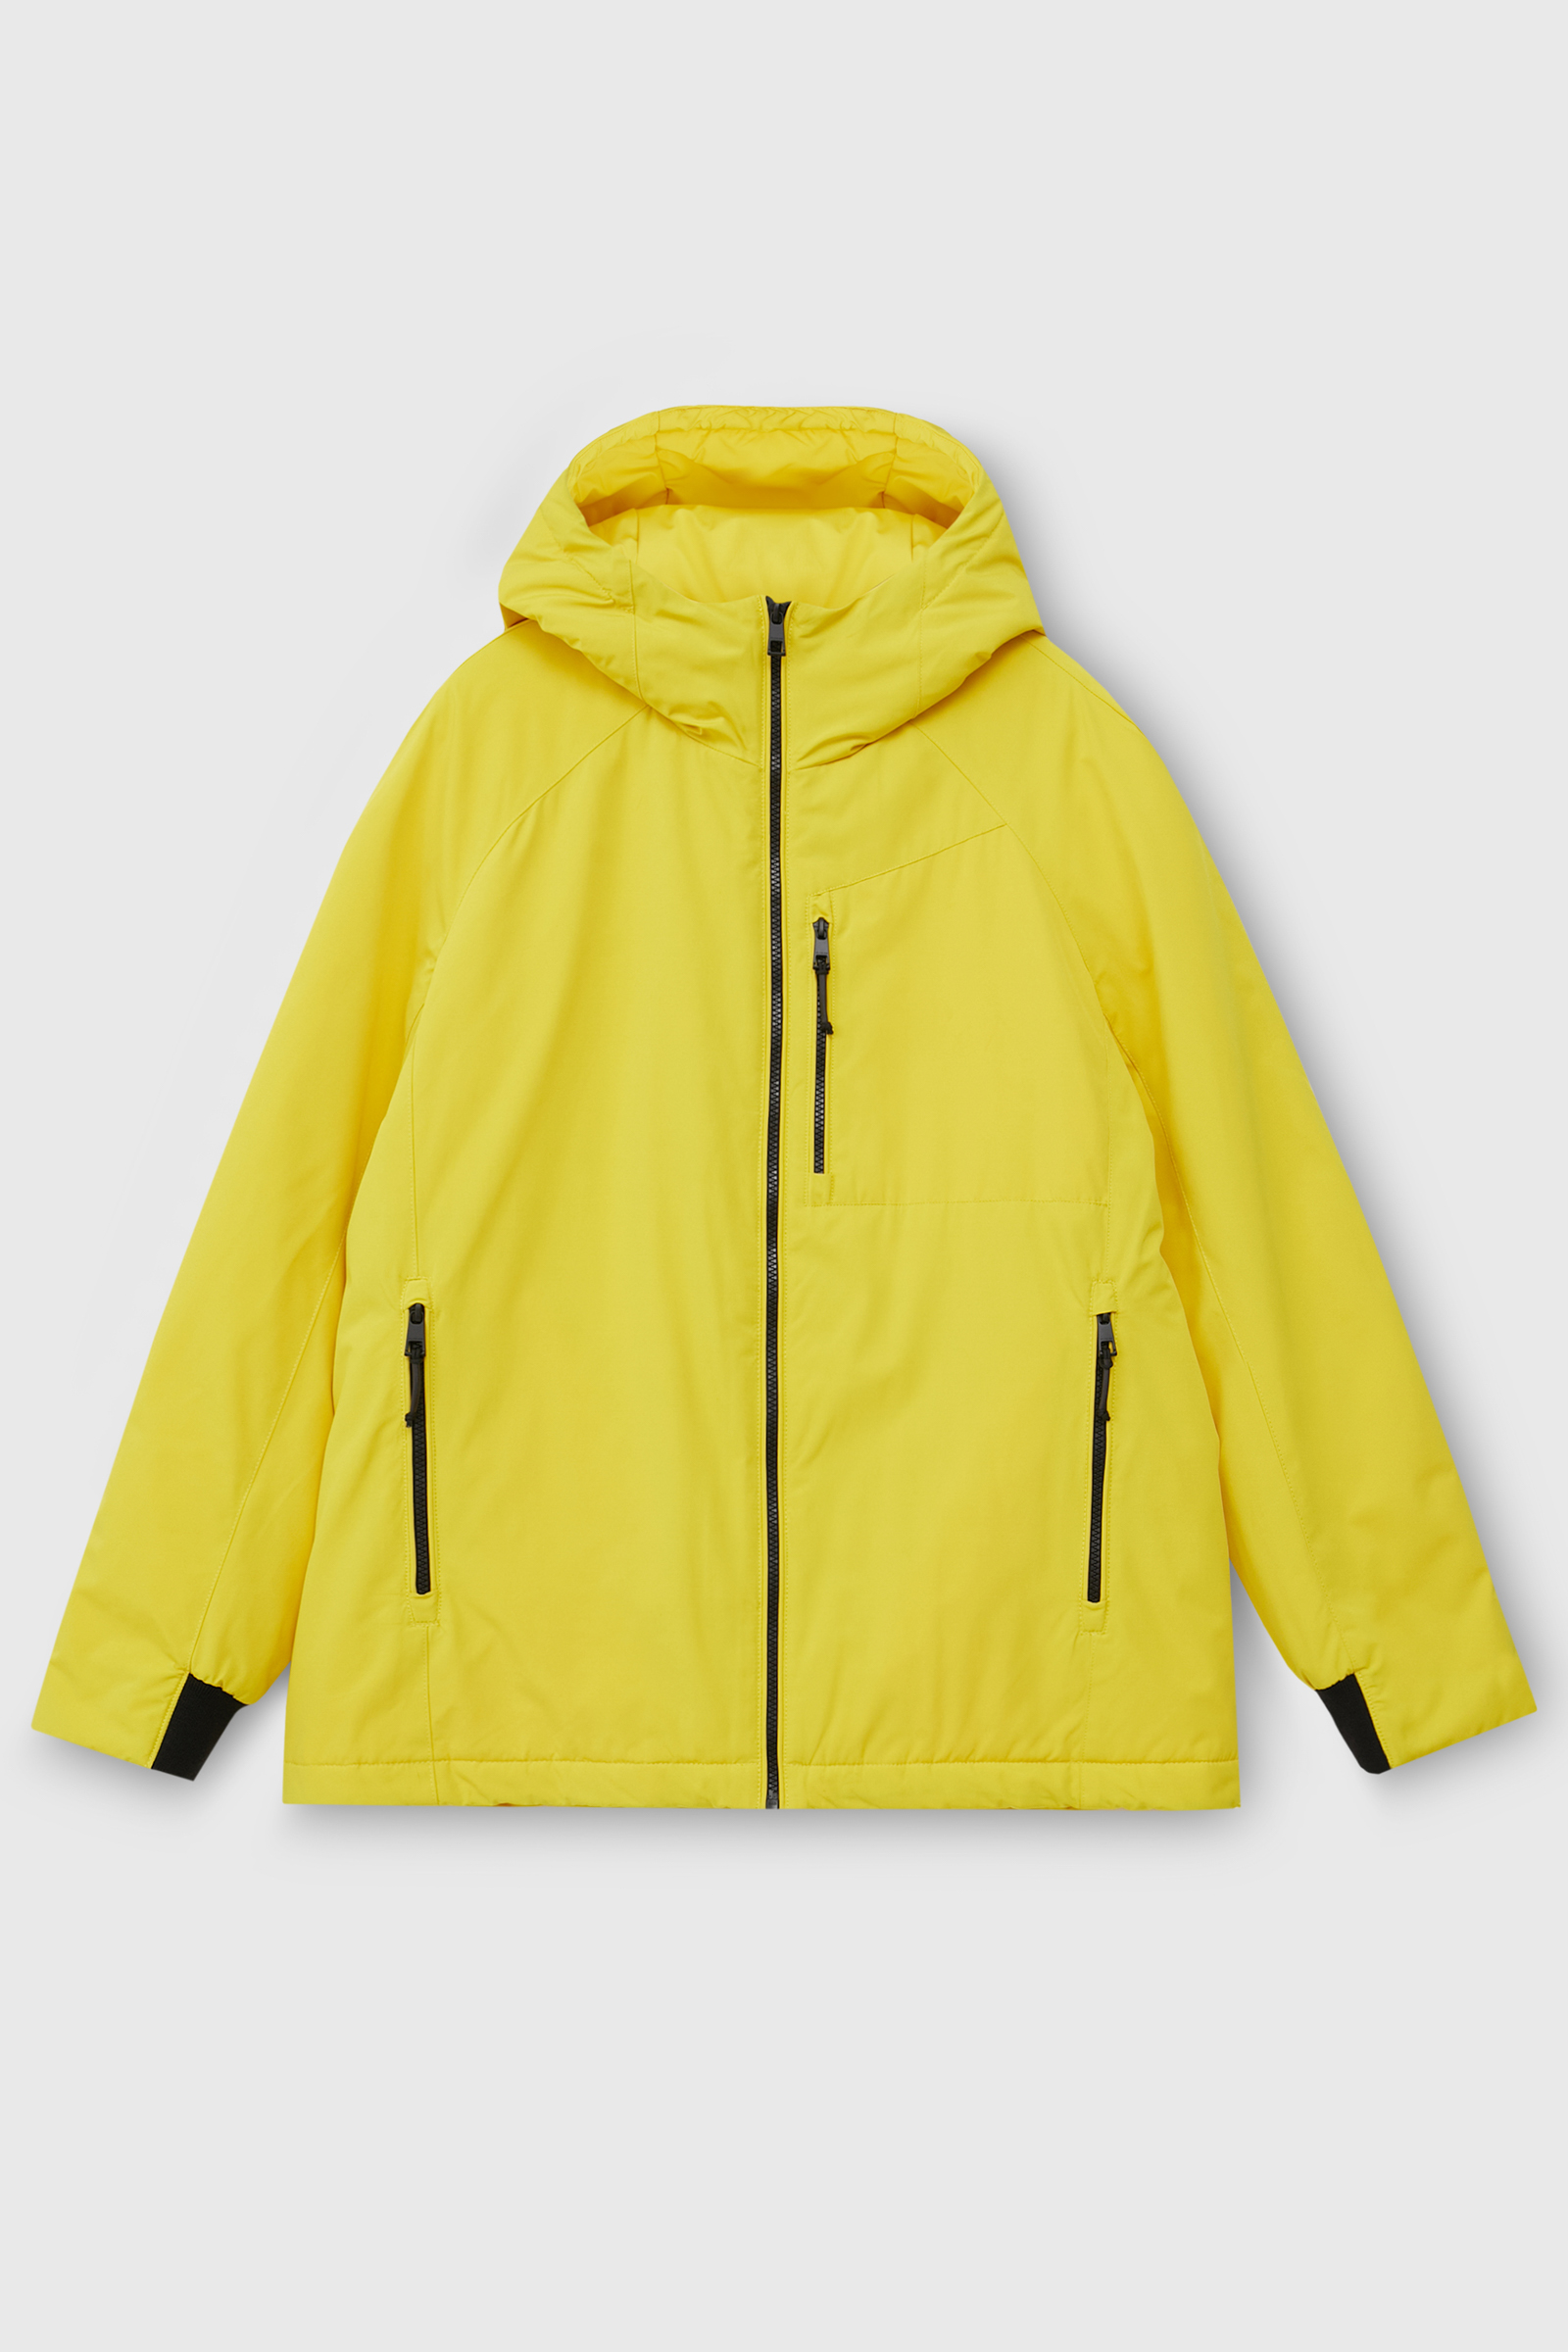 Куртка мужская Finn Flare FAC22009 желтая 2XL